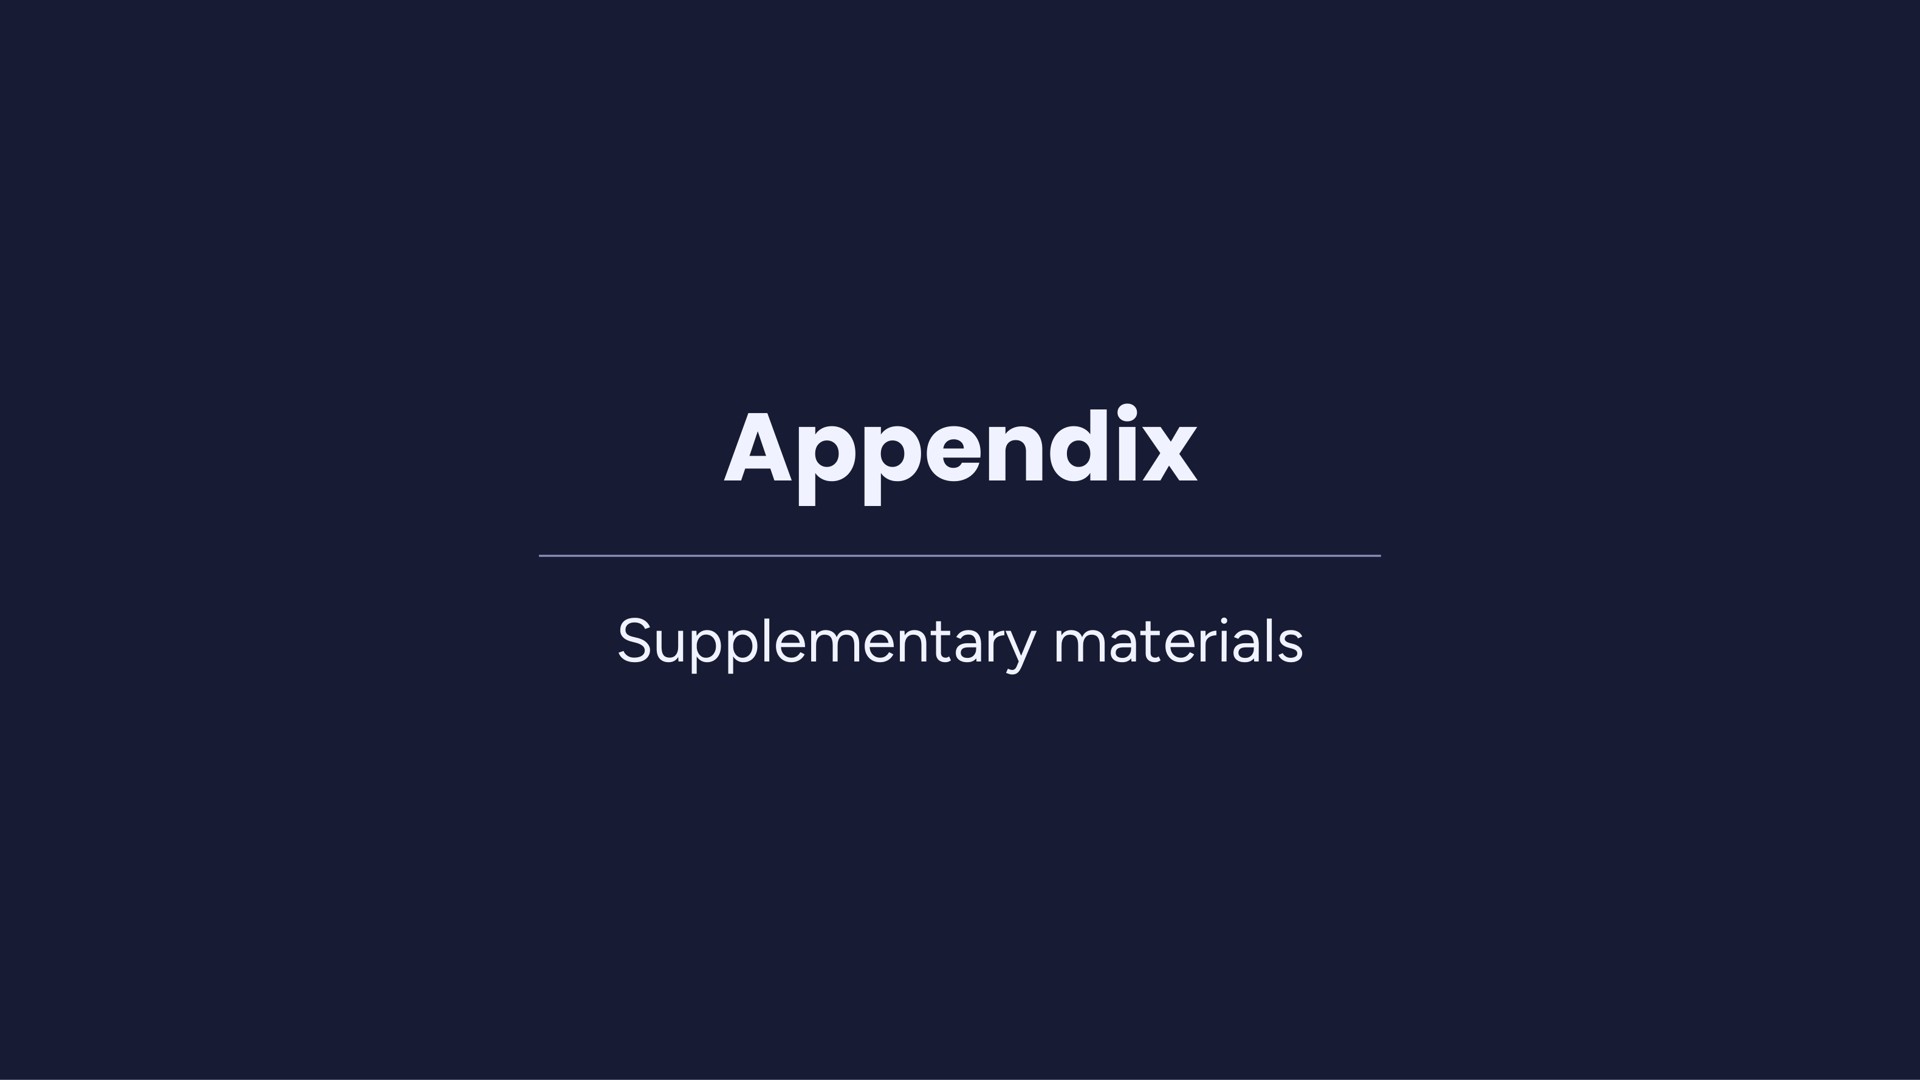 appendix supplementary materials | monday.com